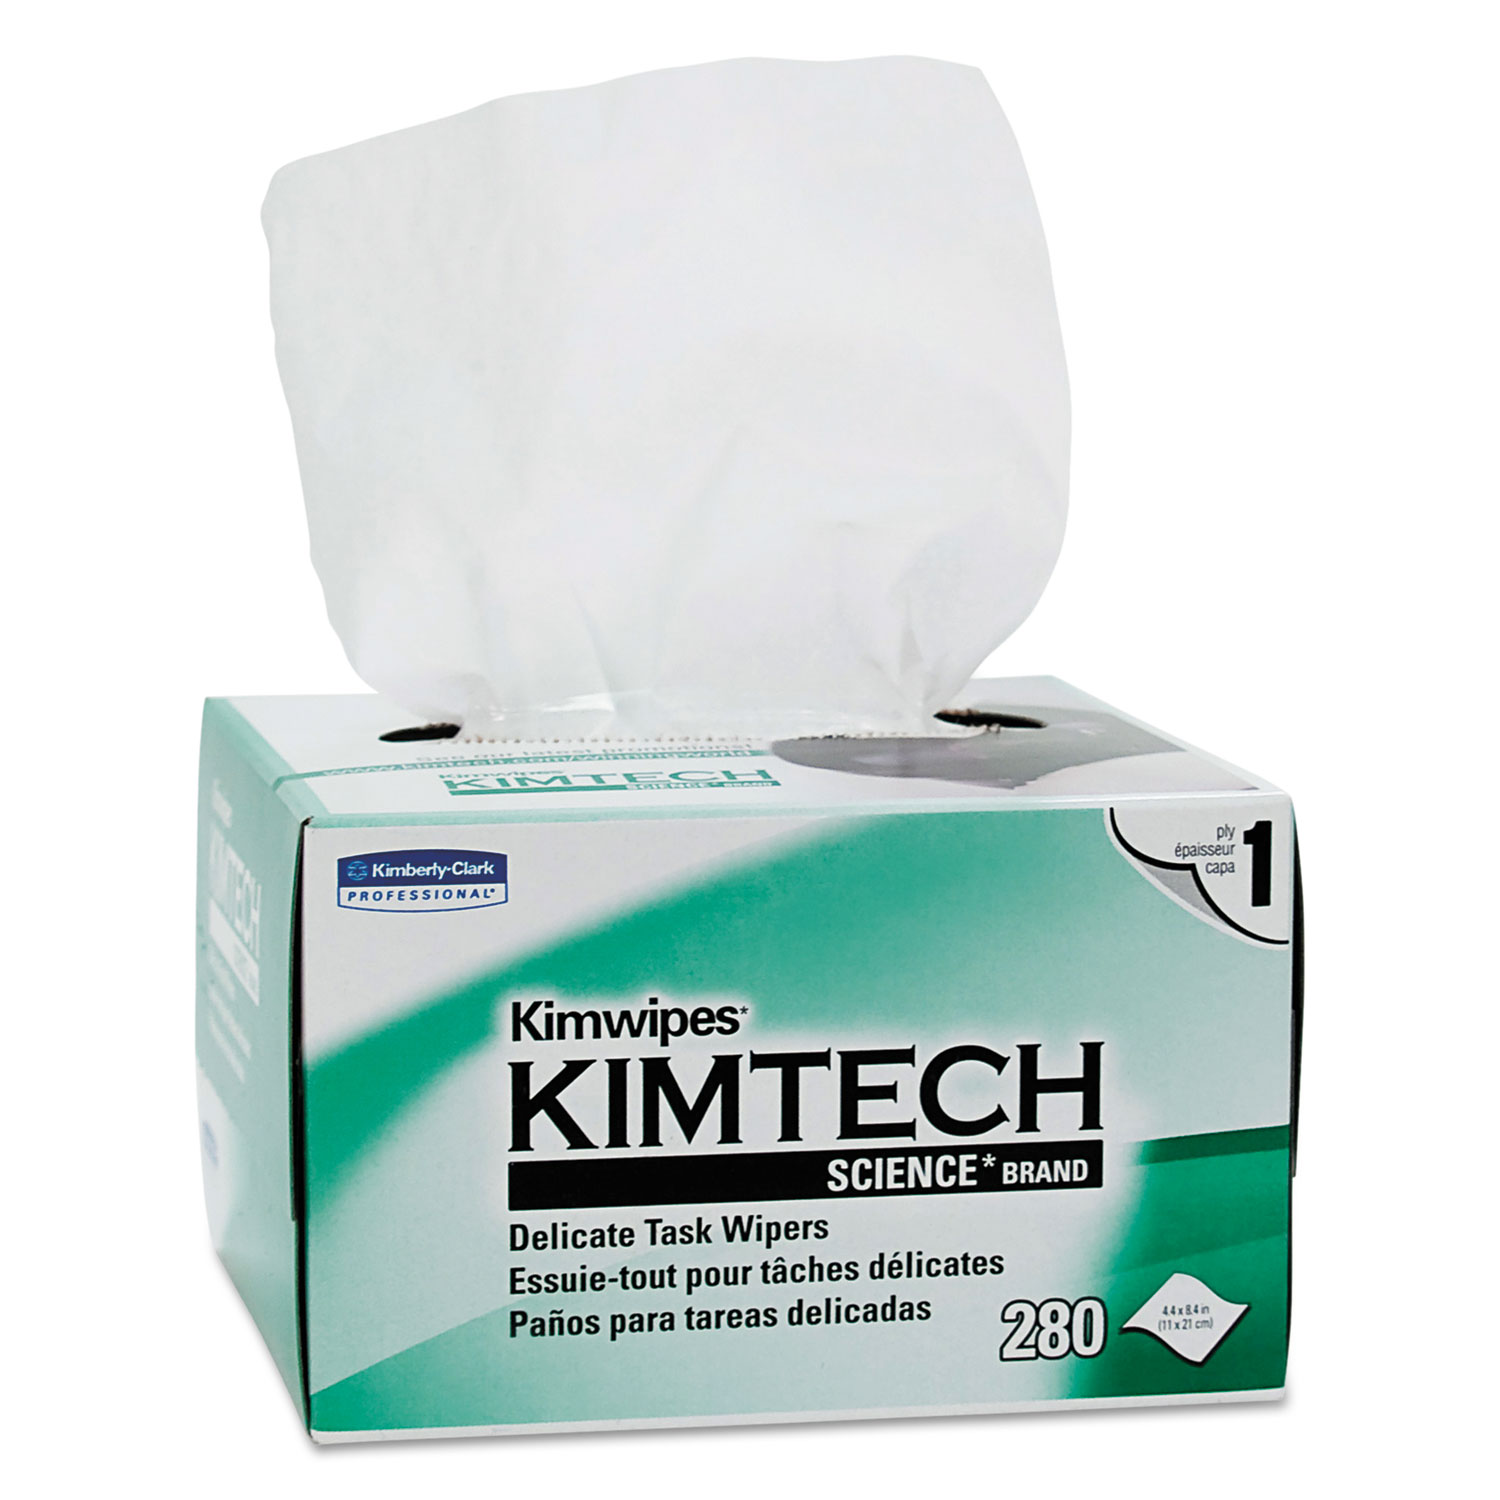  Kimtech 34120 Kimwipes Delicate Task Wipers, 1-Ply, 4 2/5 x 8 2/5, 280/Box, 30 Boxes/Carton (KCC34120) 